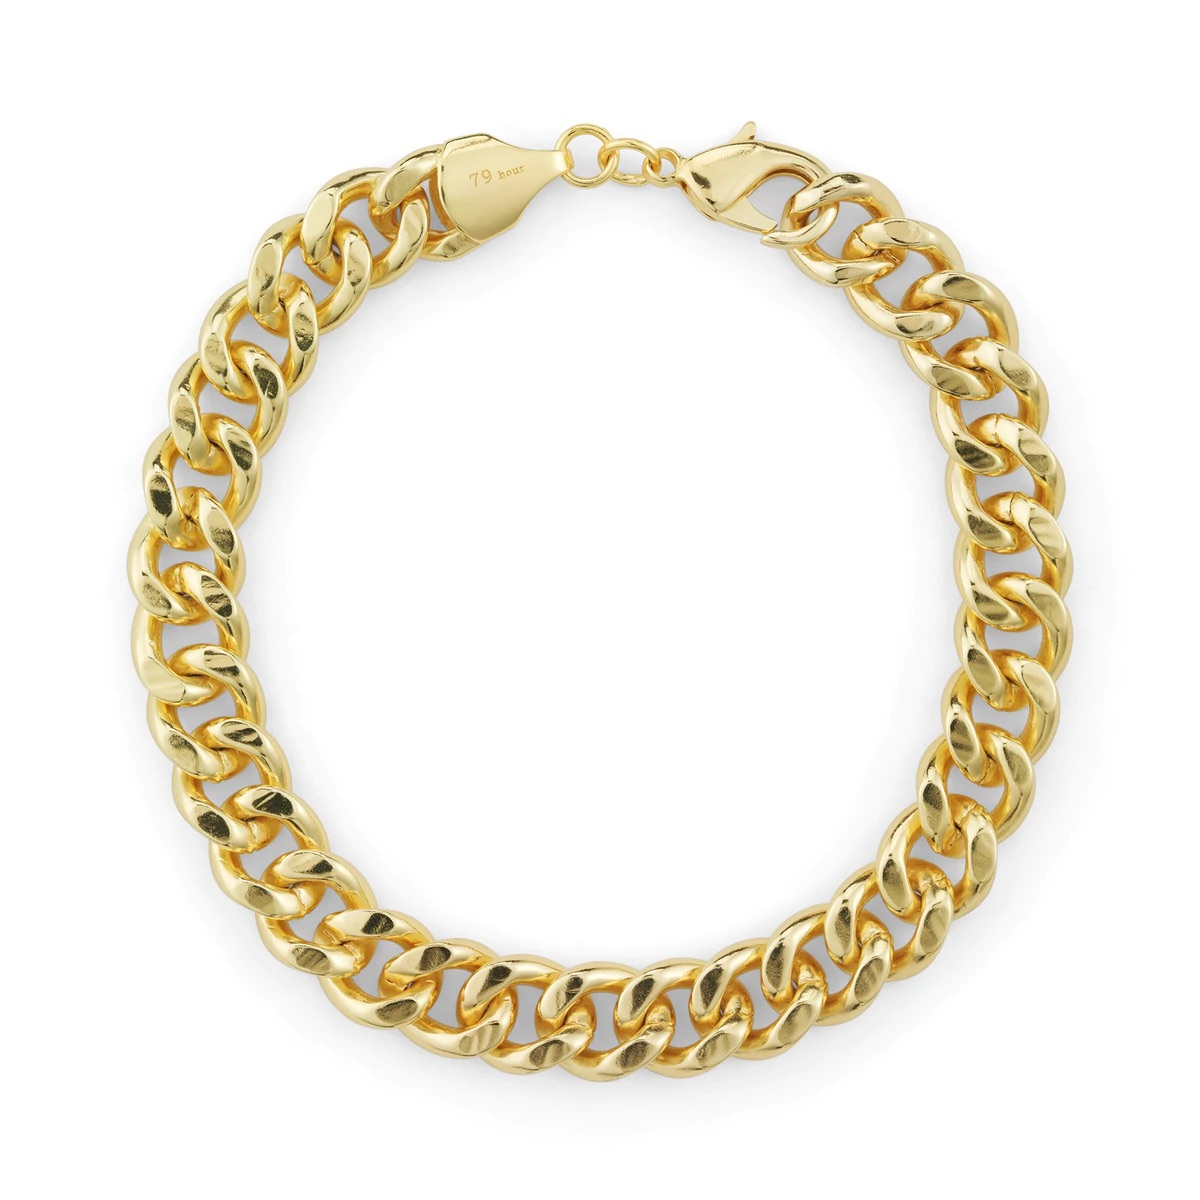 79hour, bracelet/anklet gold